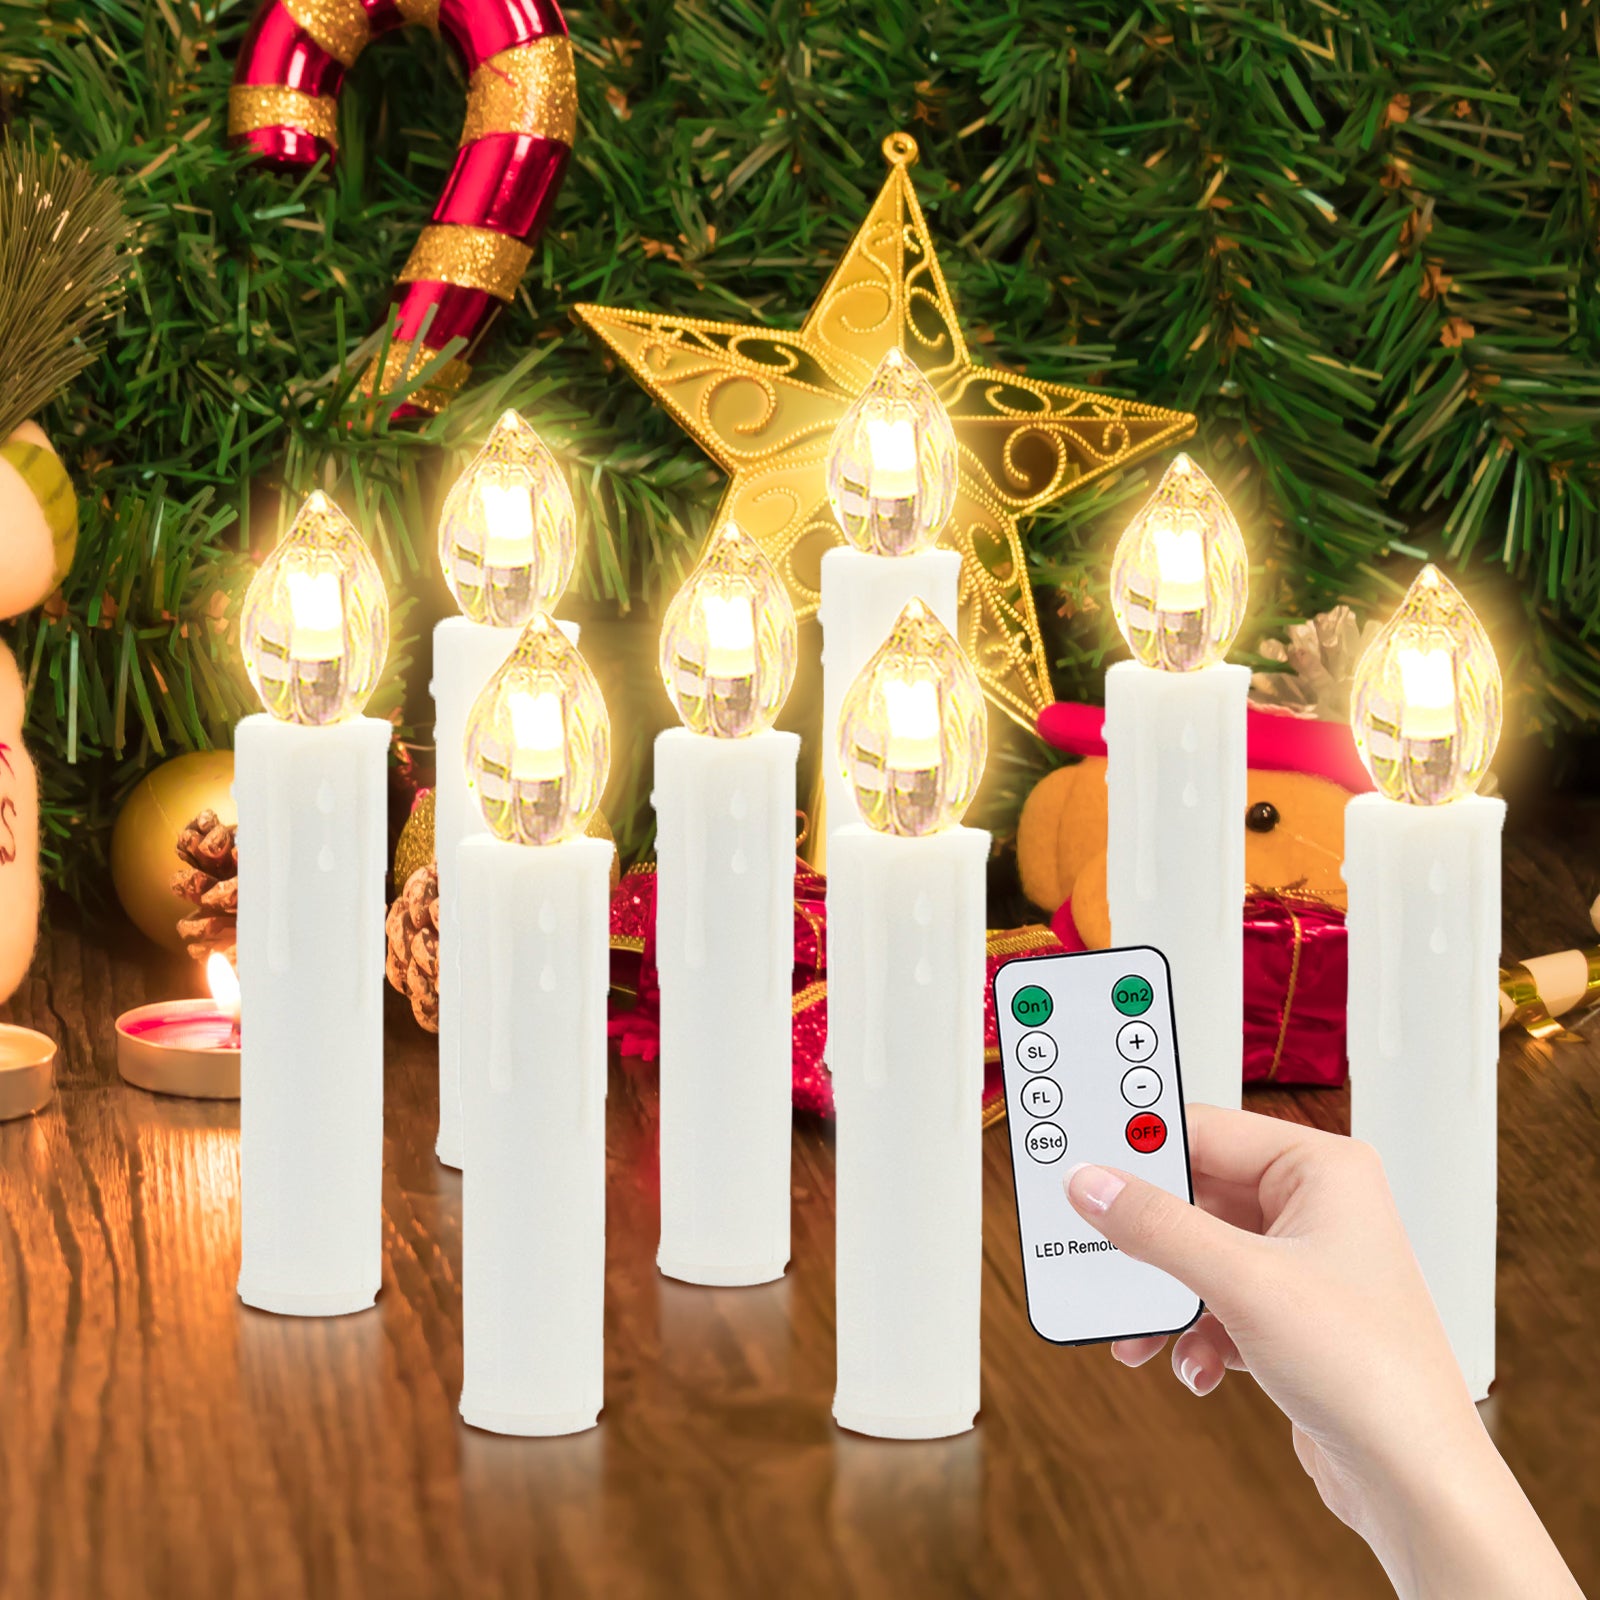 100x Bougies LED Bougies de Noël LED guirlandes lumineuses sans fil avec  minuterie sans flamme blanc chaud